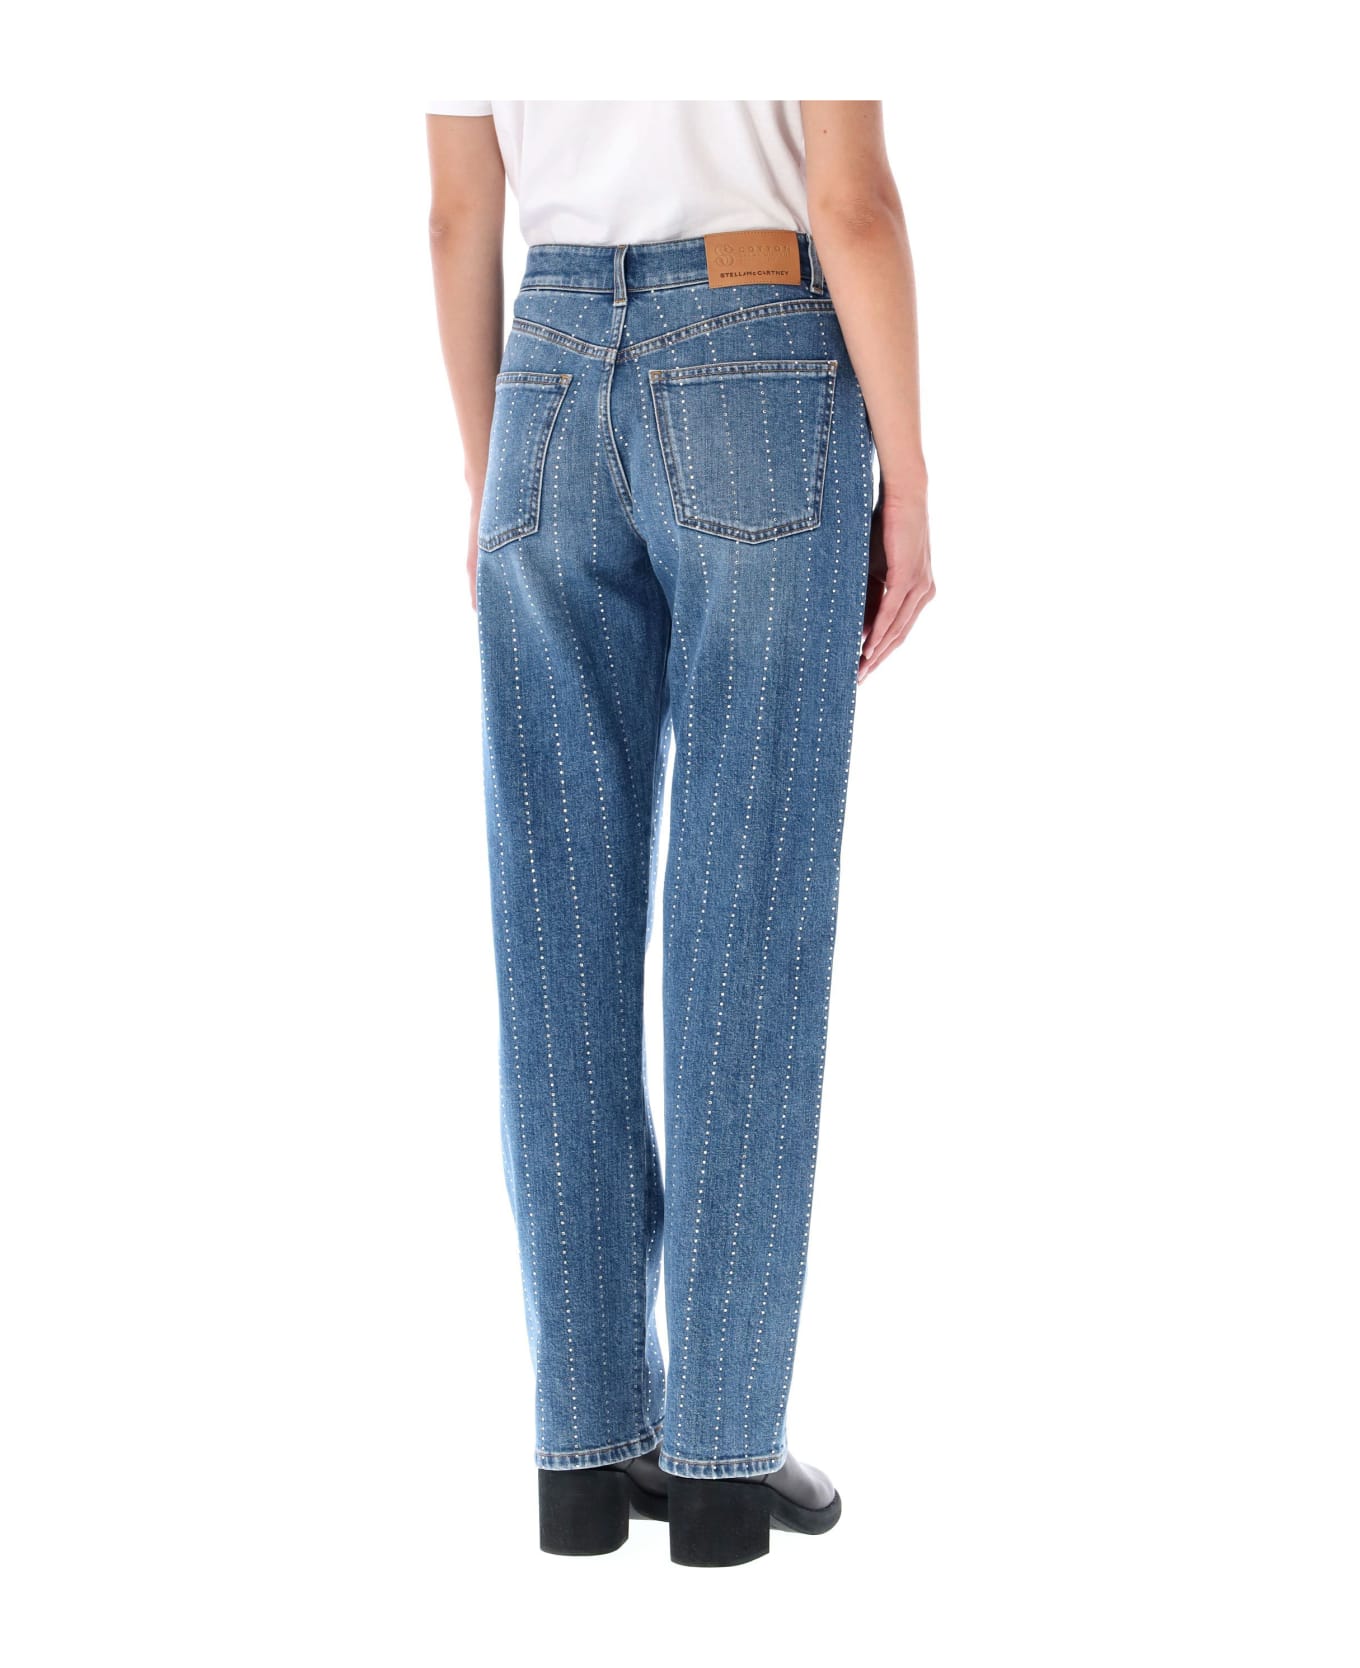 Stella McCartney Embellished Jeans - VINTAGE DARK デニム